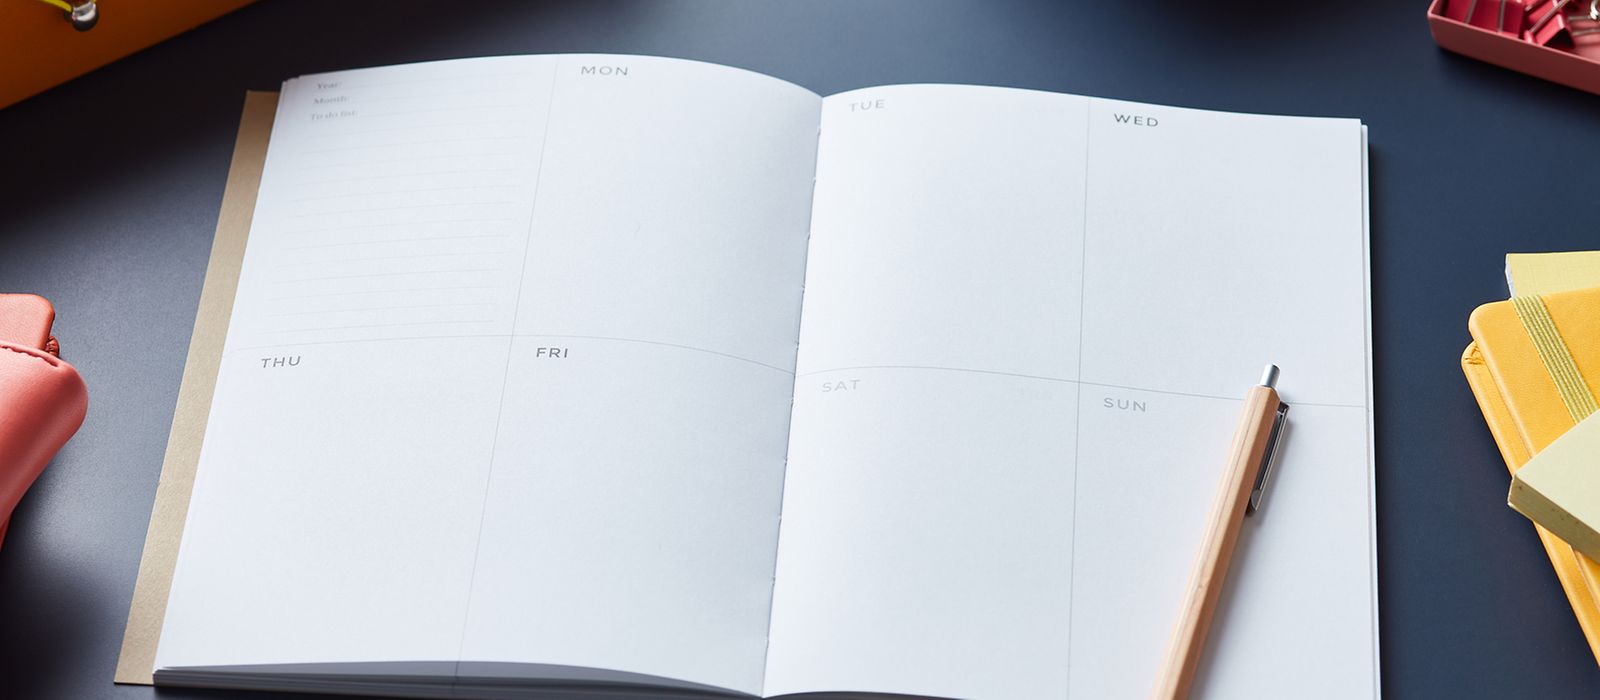 Bild zeigt: Aufgeschlagener Terminkalender